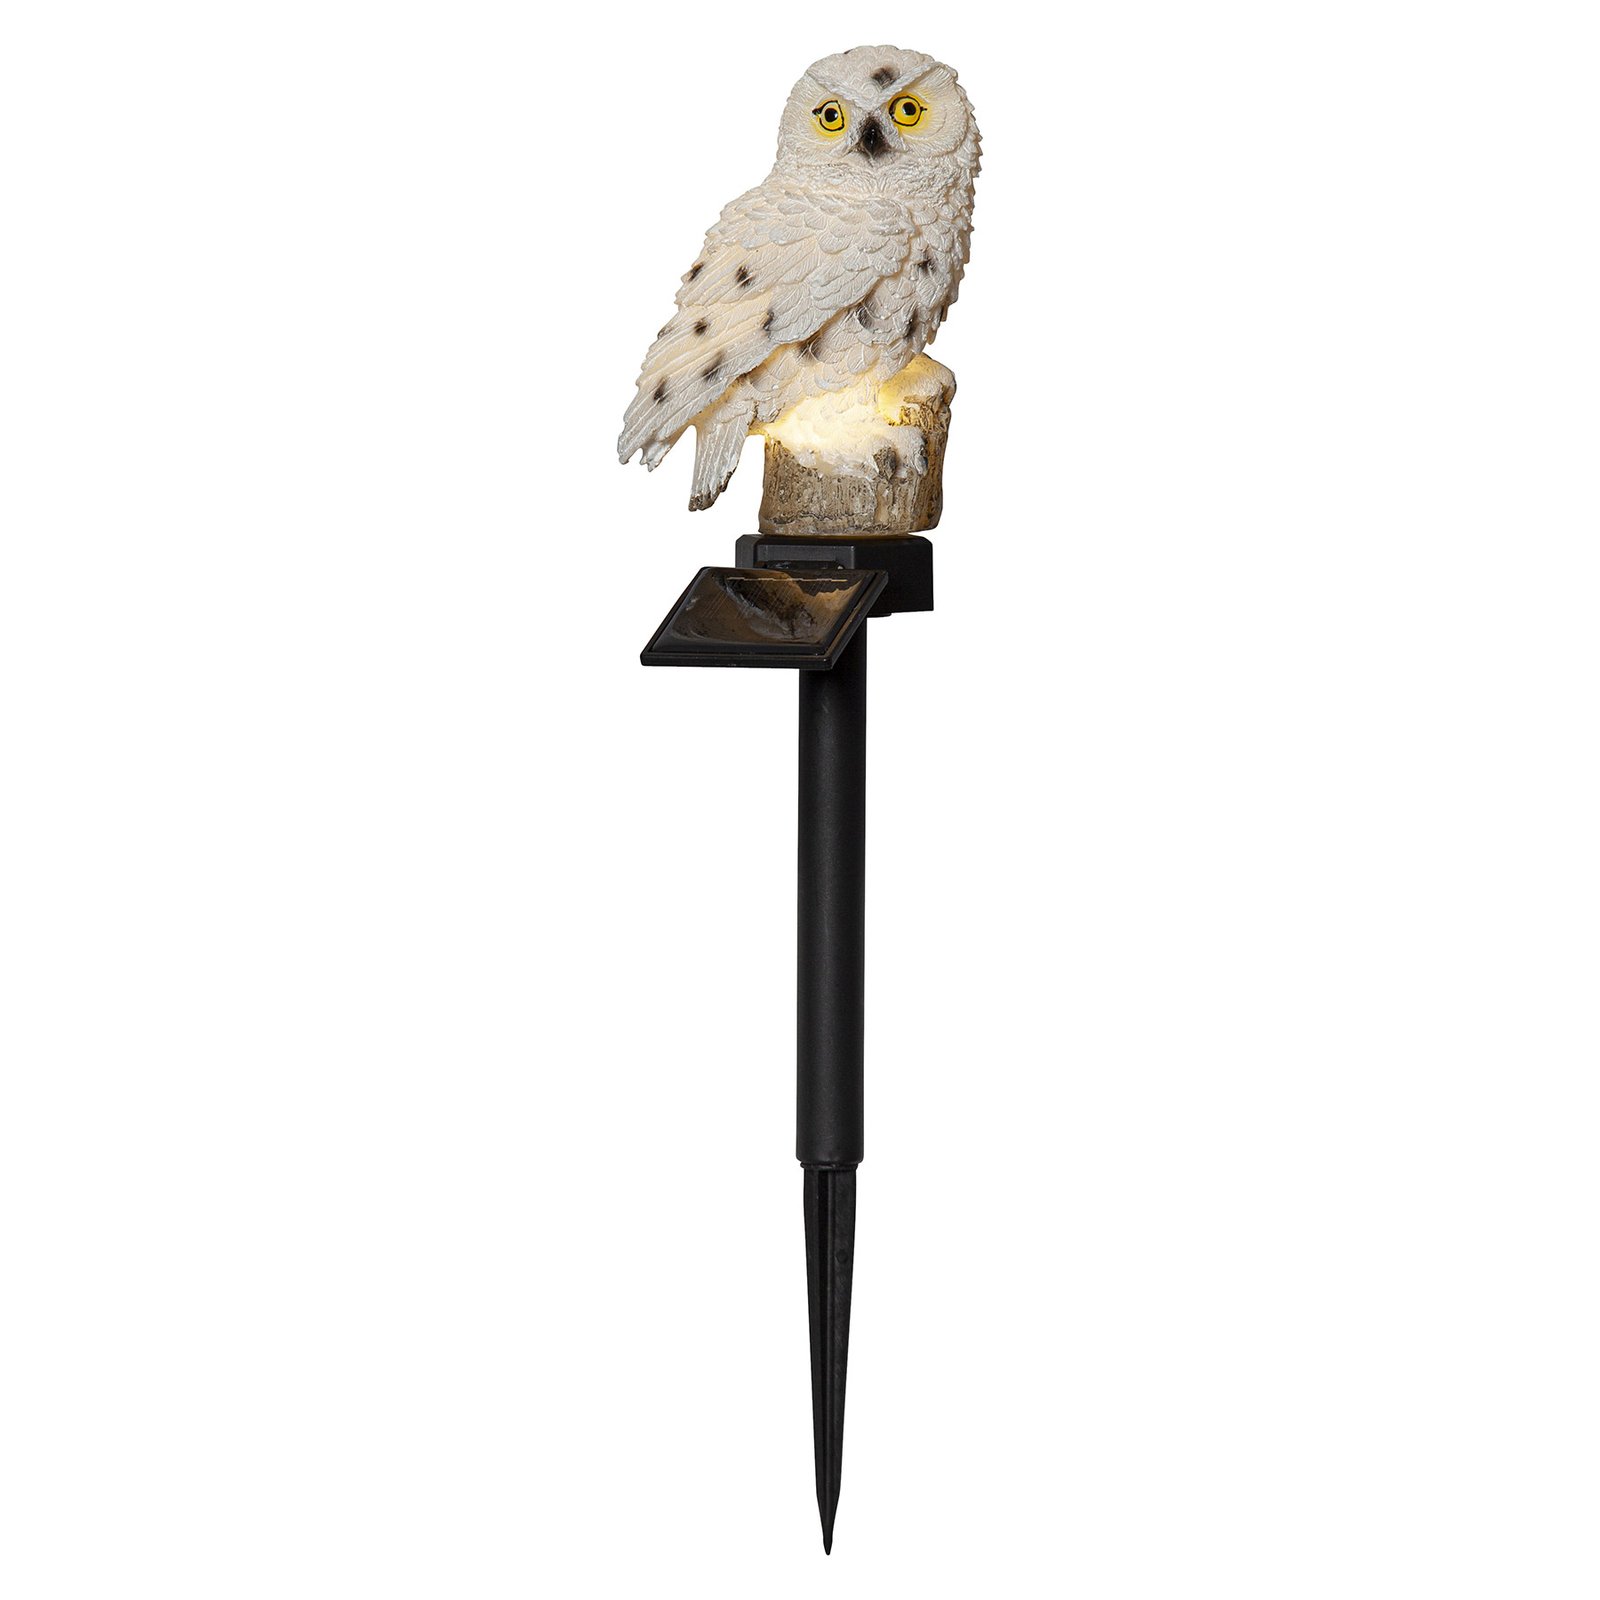 Lampa solarna LED Owl z grotem ziemnym